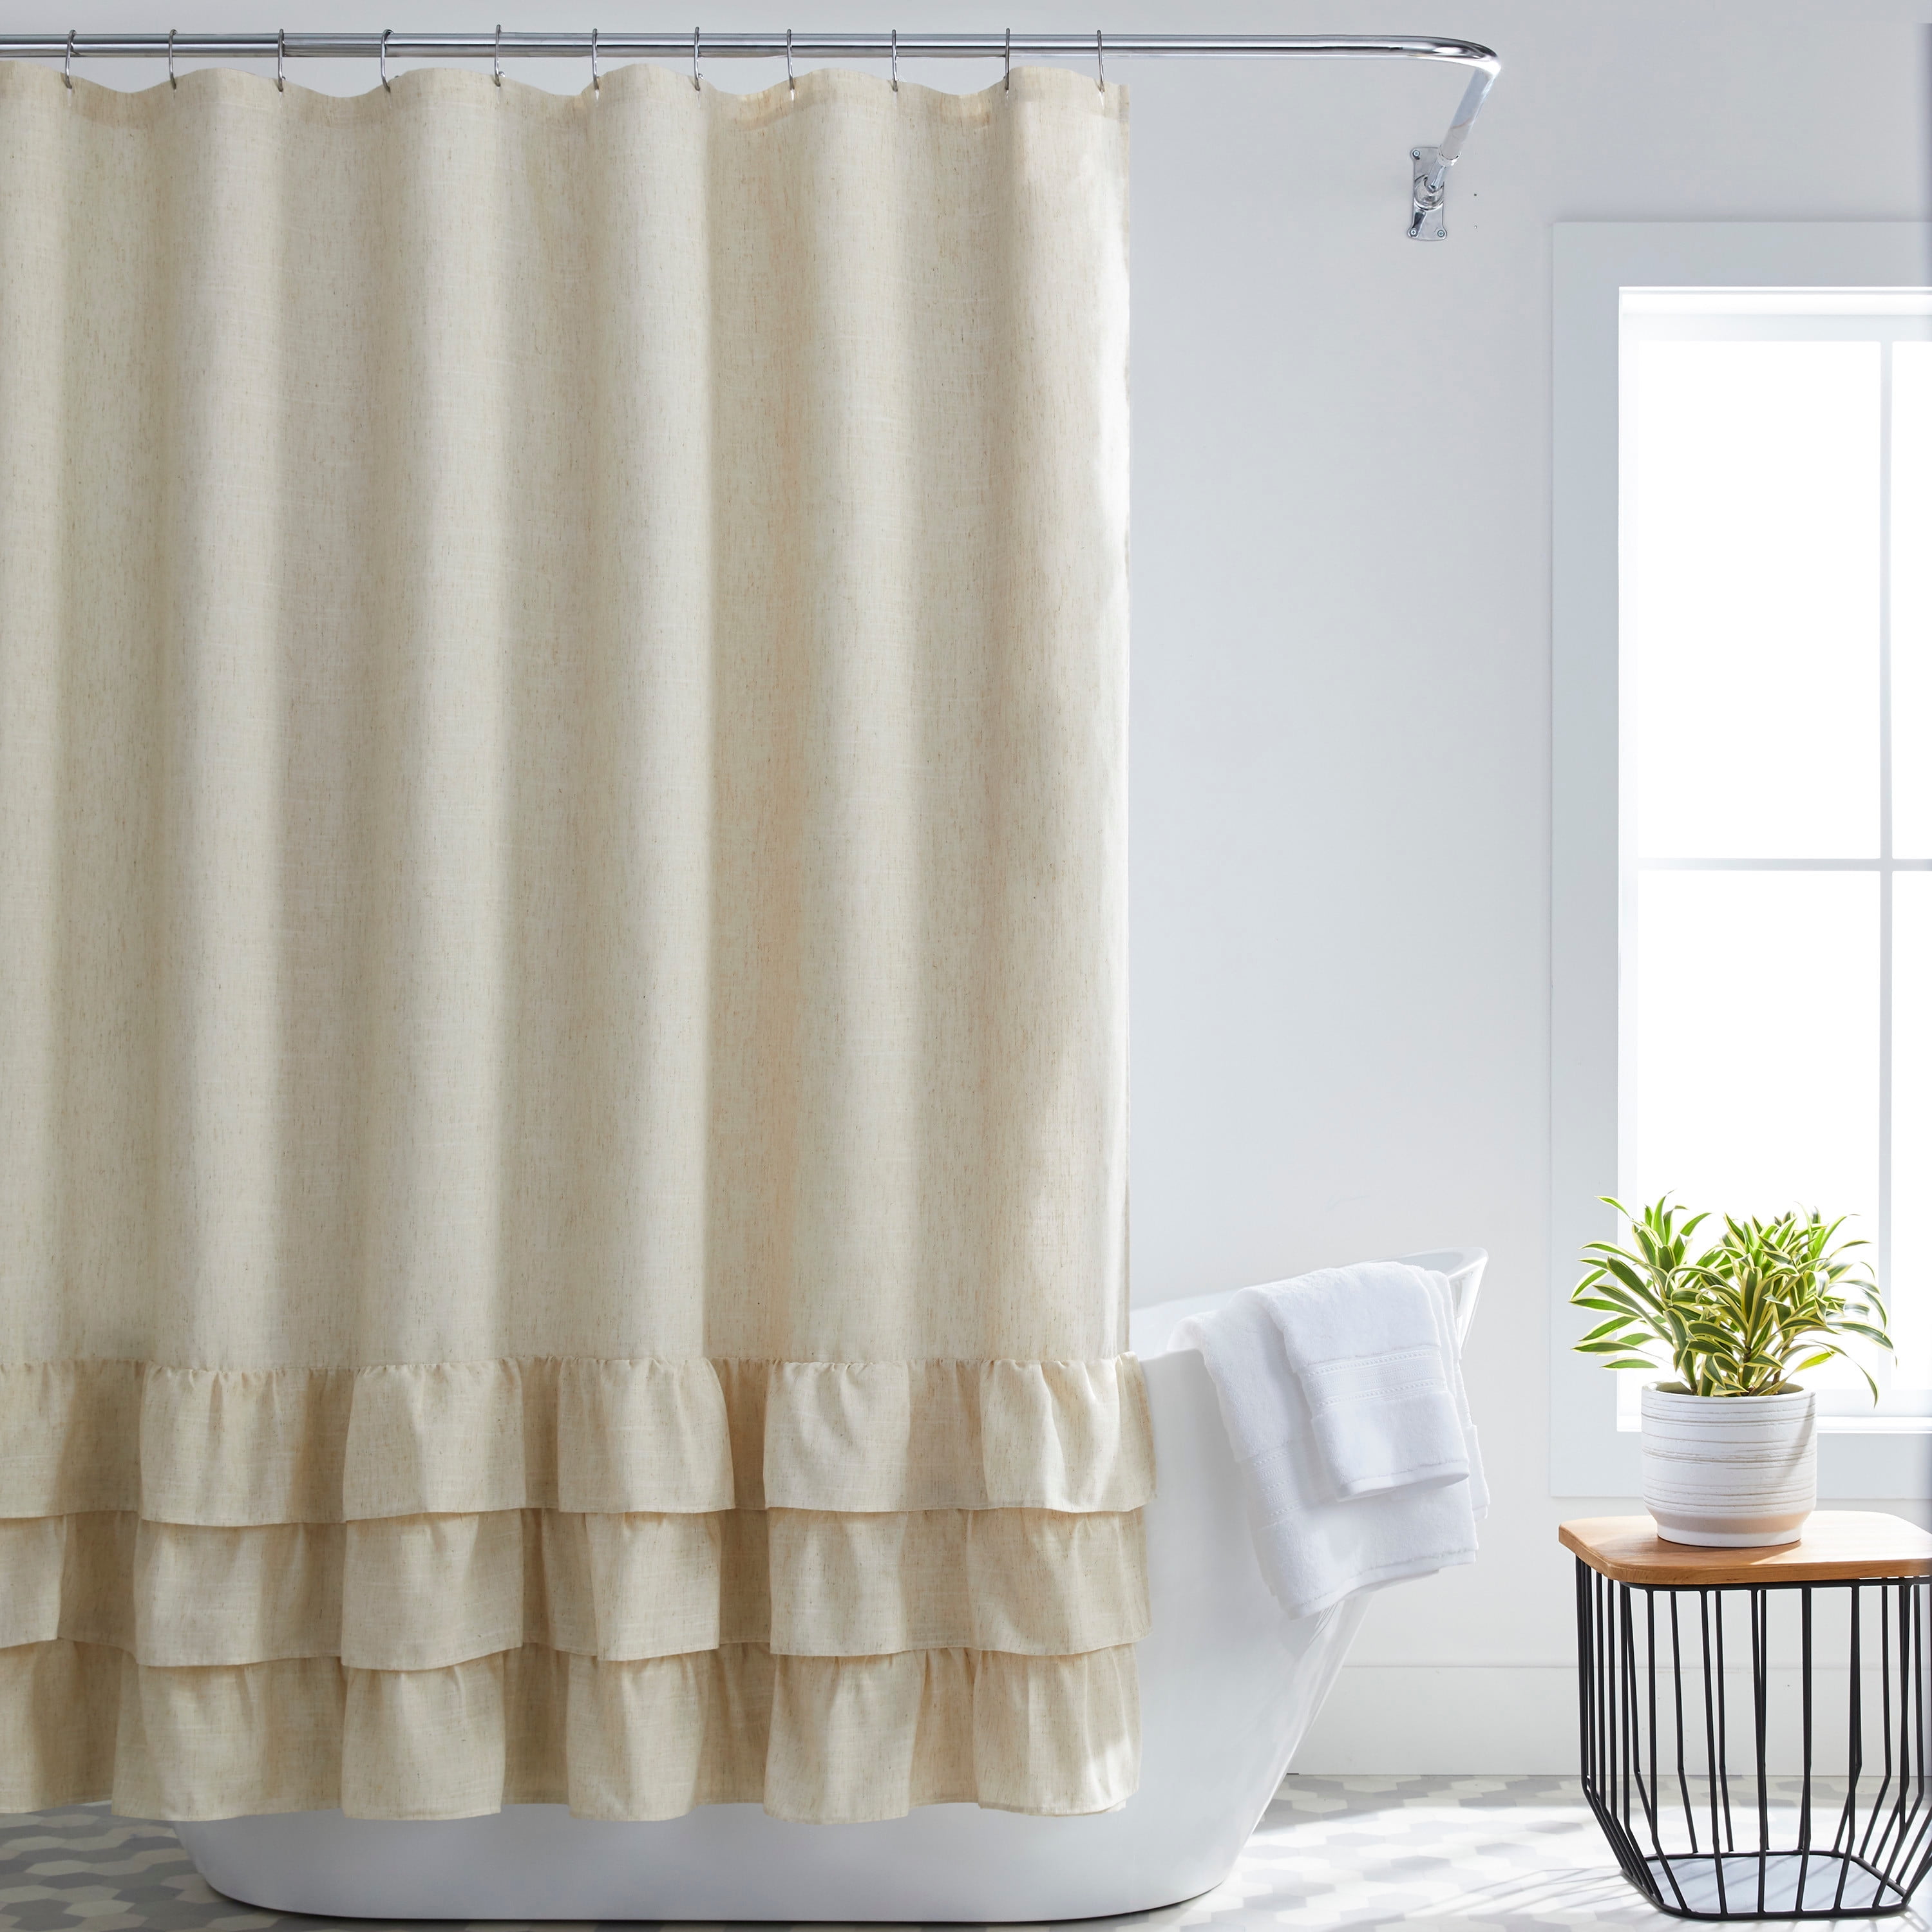 Better Homes Gardens Blaine Ruffle Bathroom Polyester Linen Shower Curtain Beige 72 X72 Com